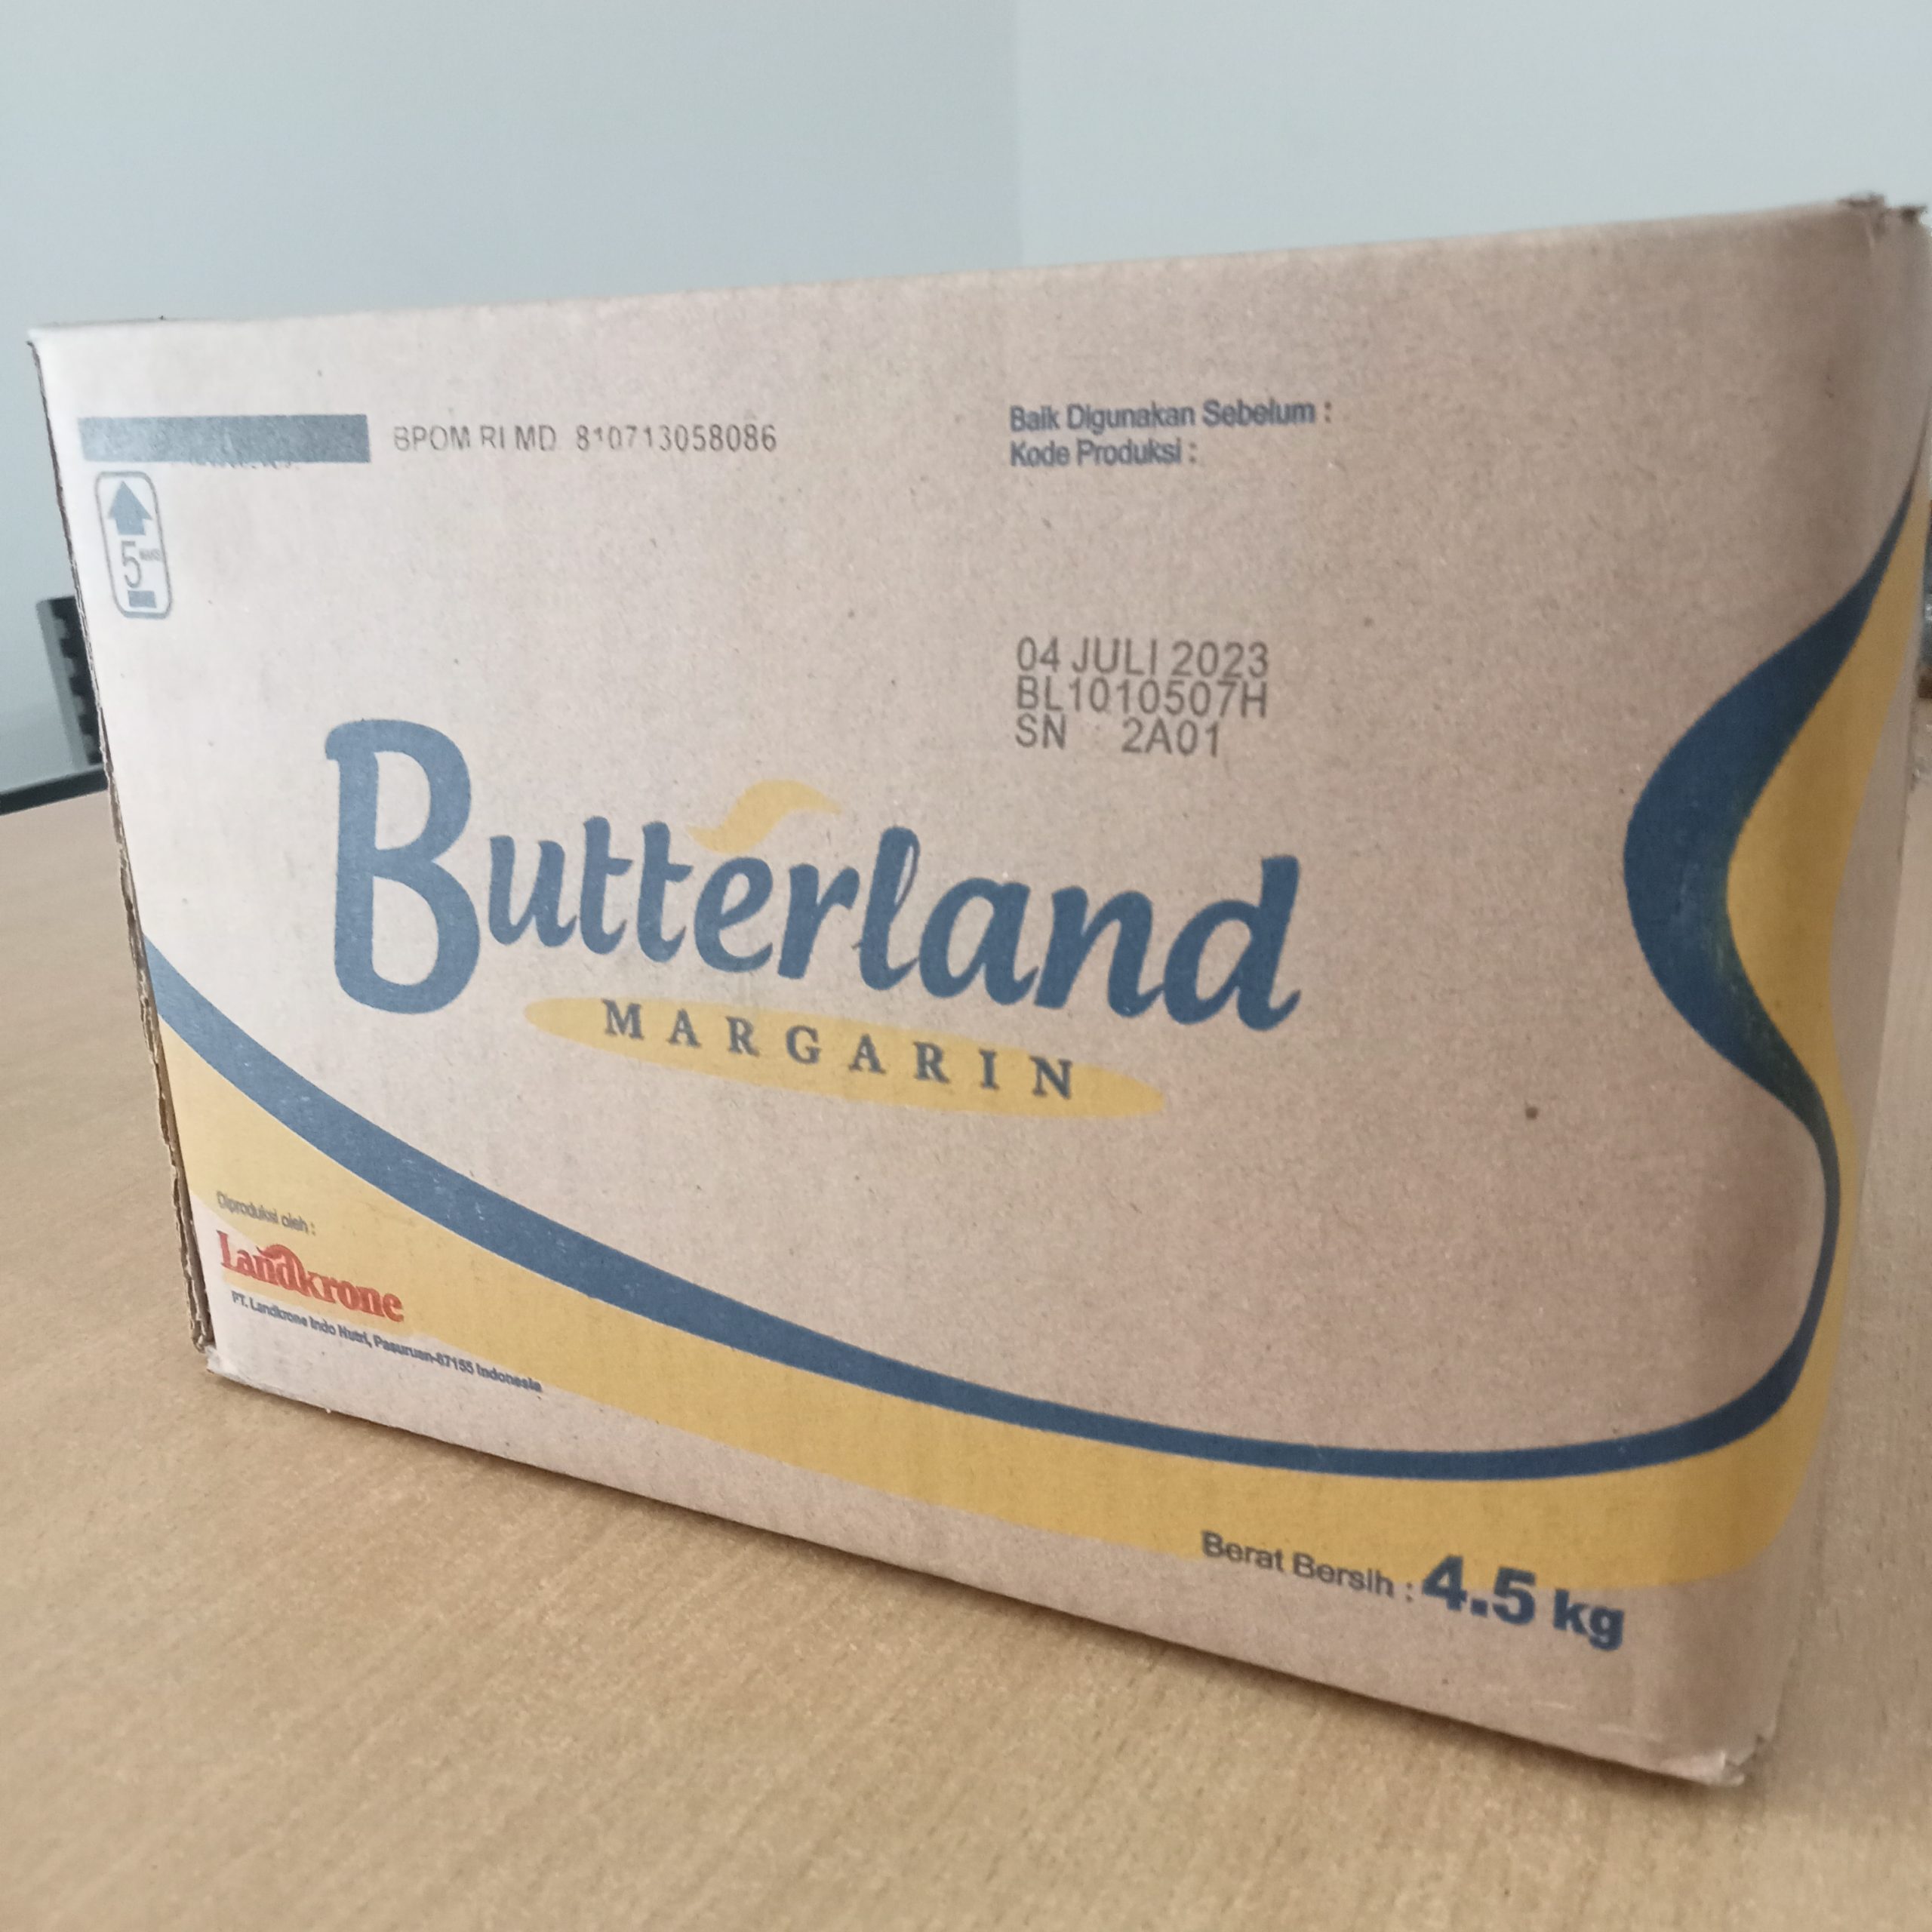 Butterland margarin (1)